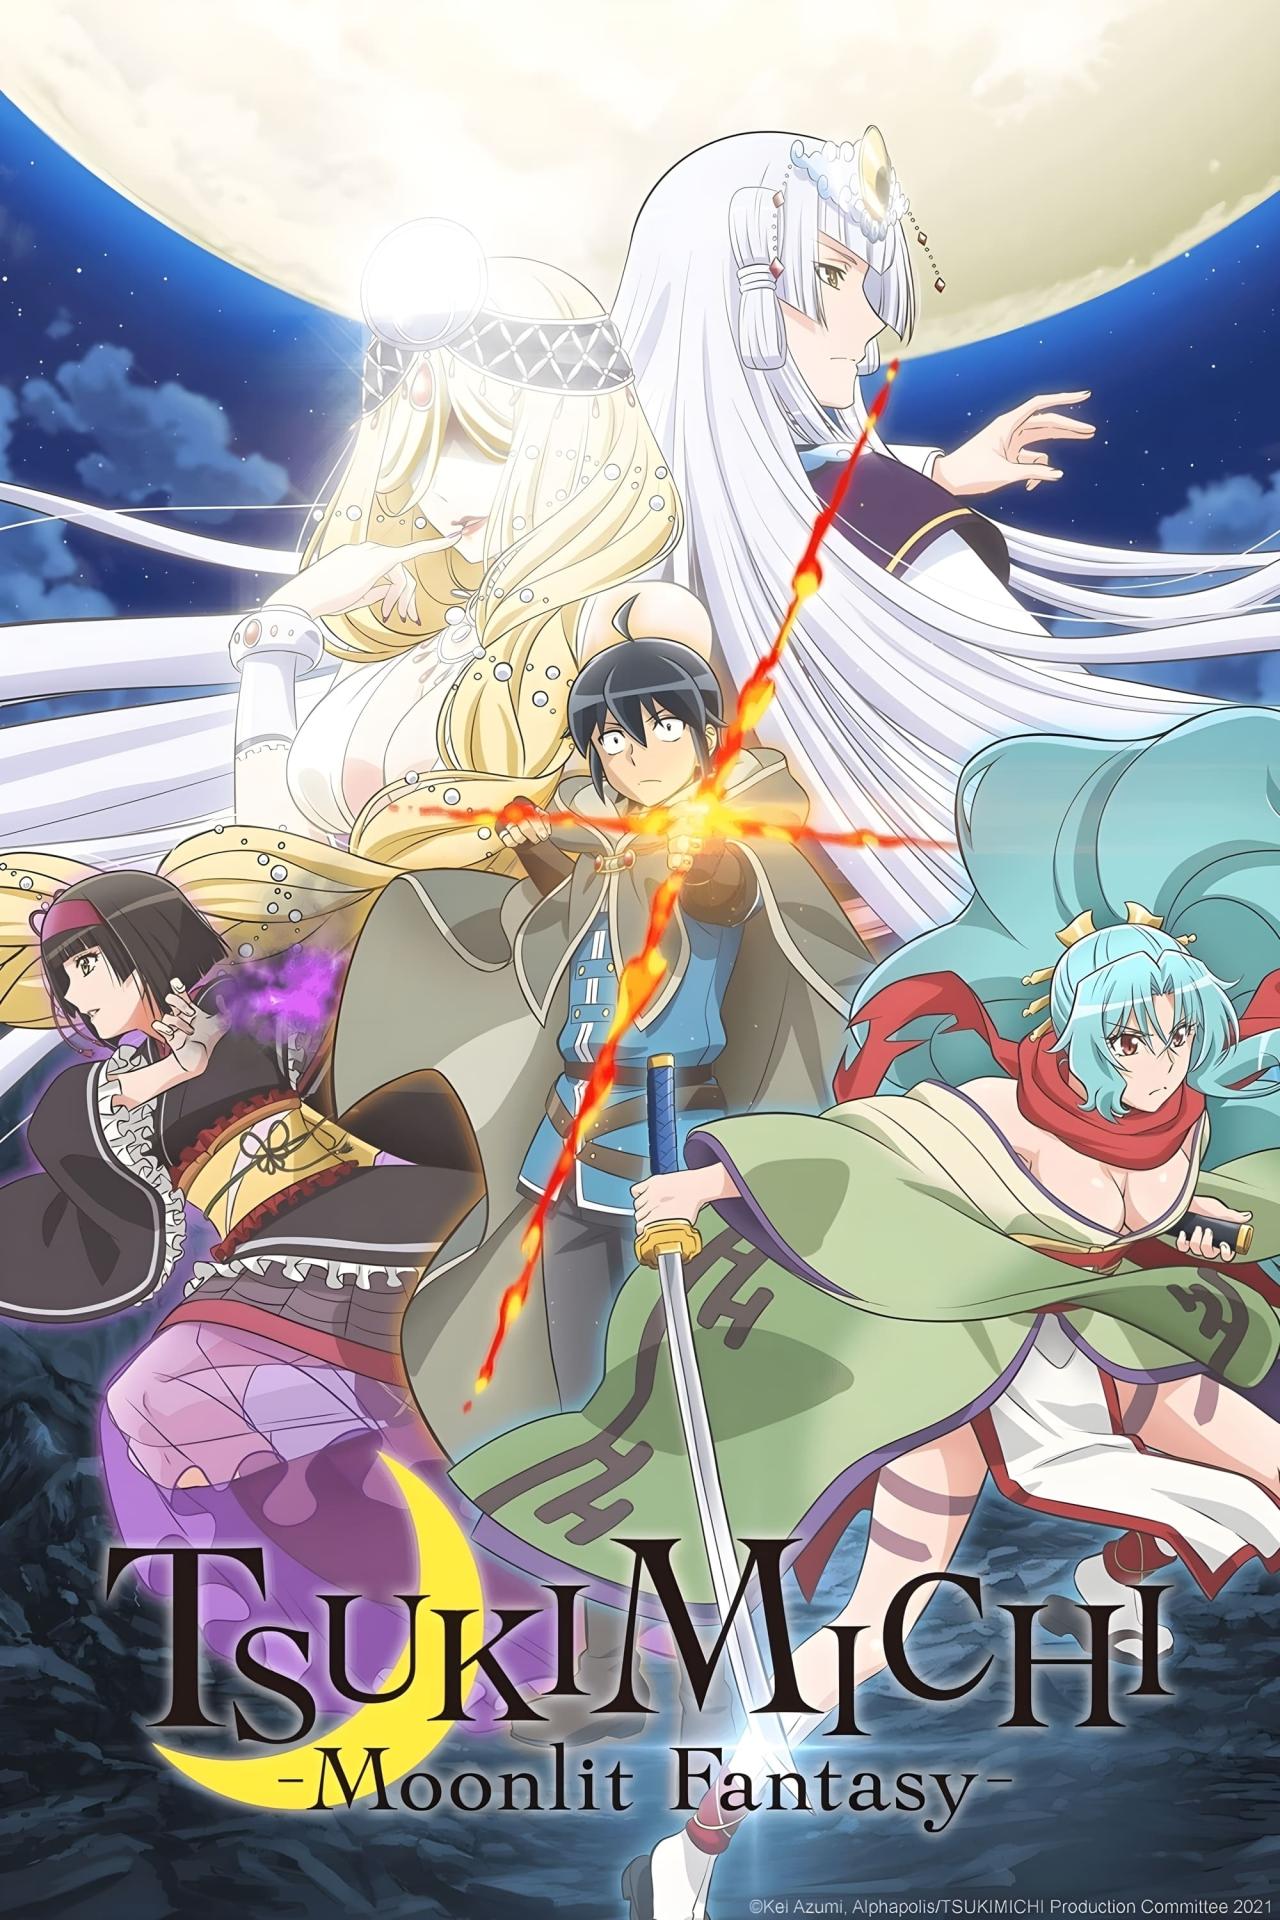 Les saisons de Tsukimichi -Moonlit Fantasy- sont-elles disponibles sur Netflix ou autre ?